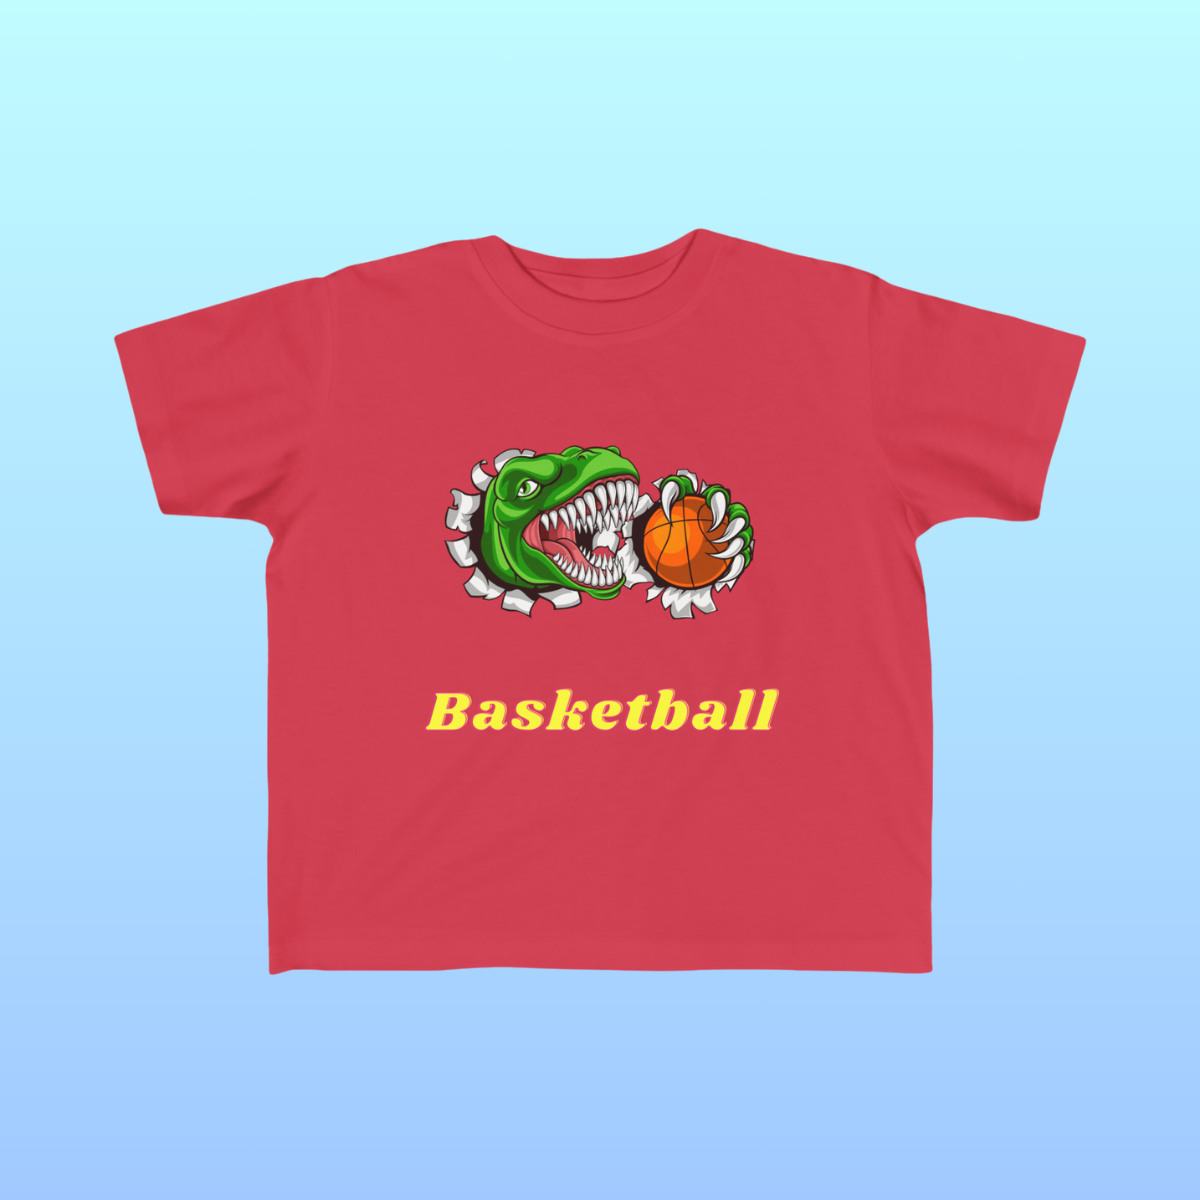 Red Toddler Basketball Fan Jersey T-Shirt